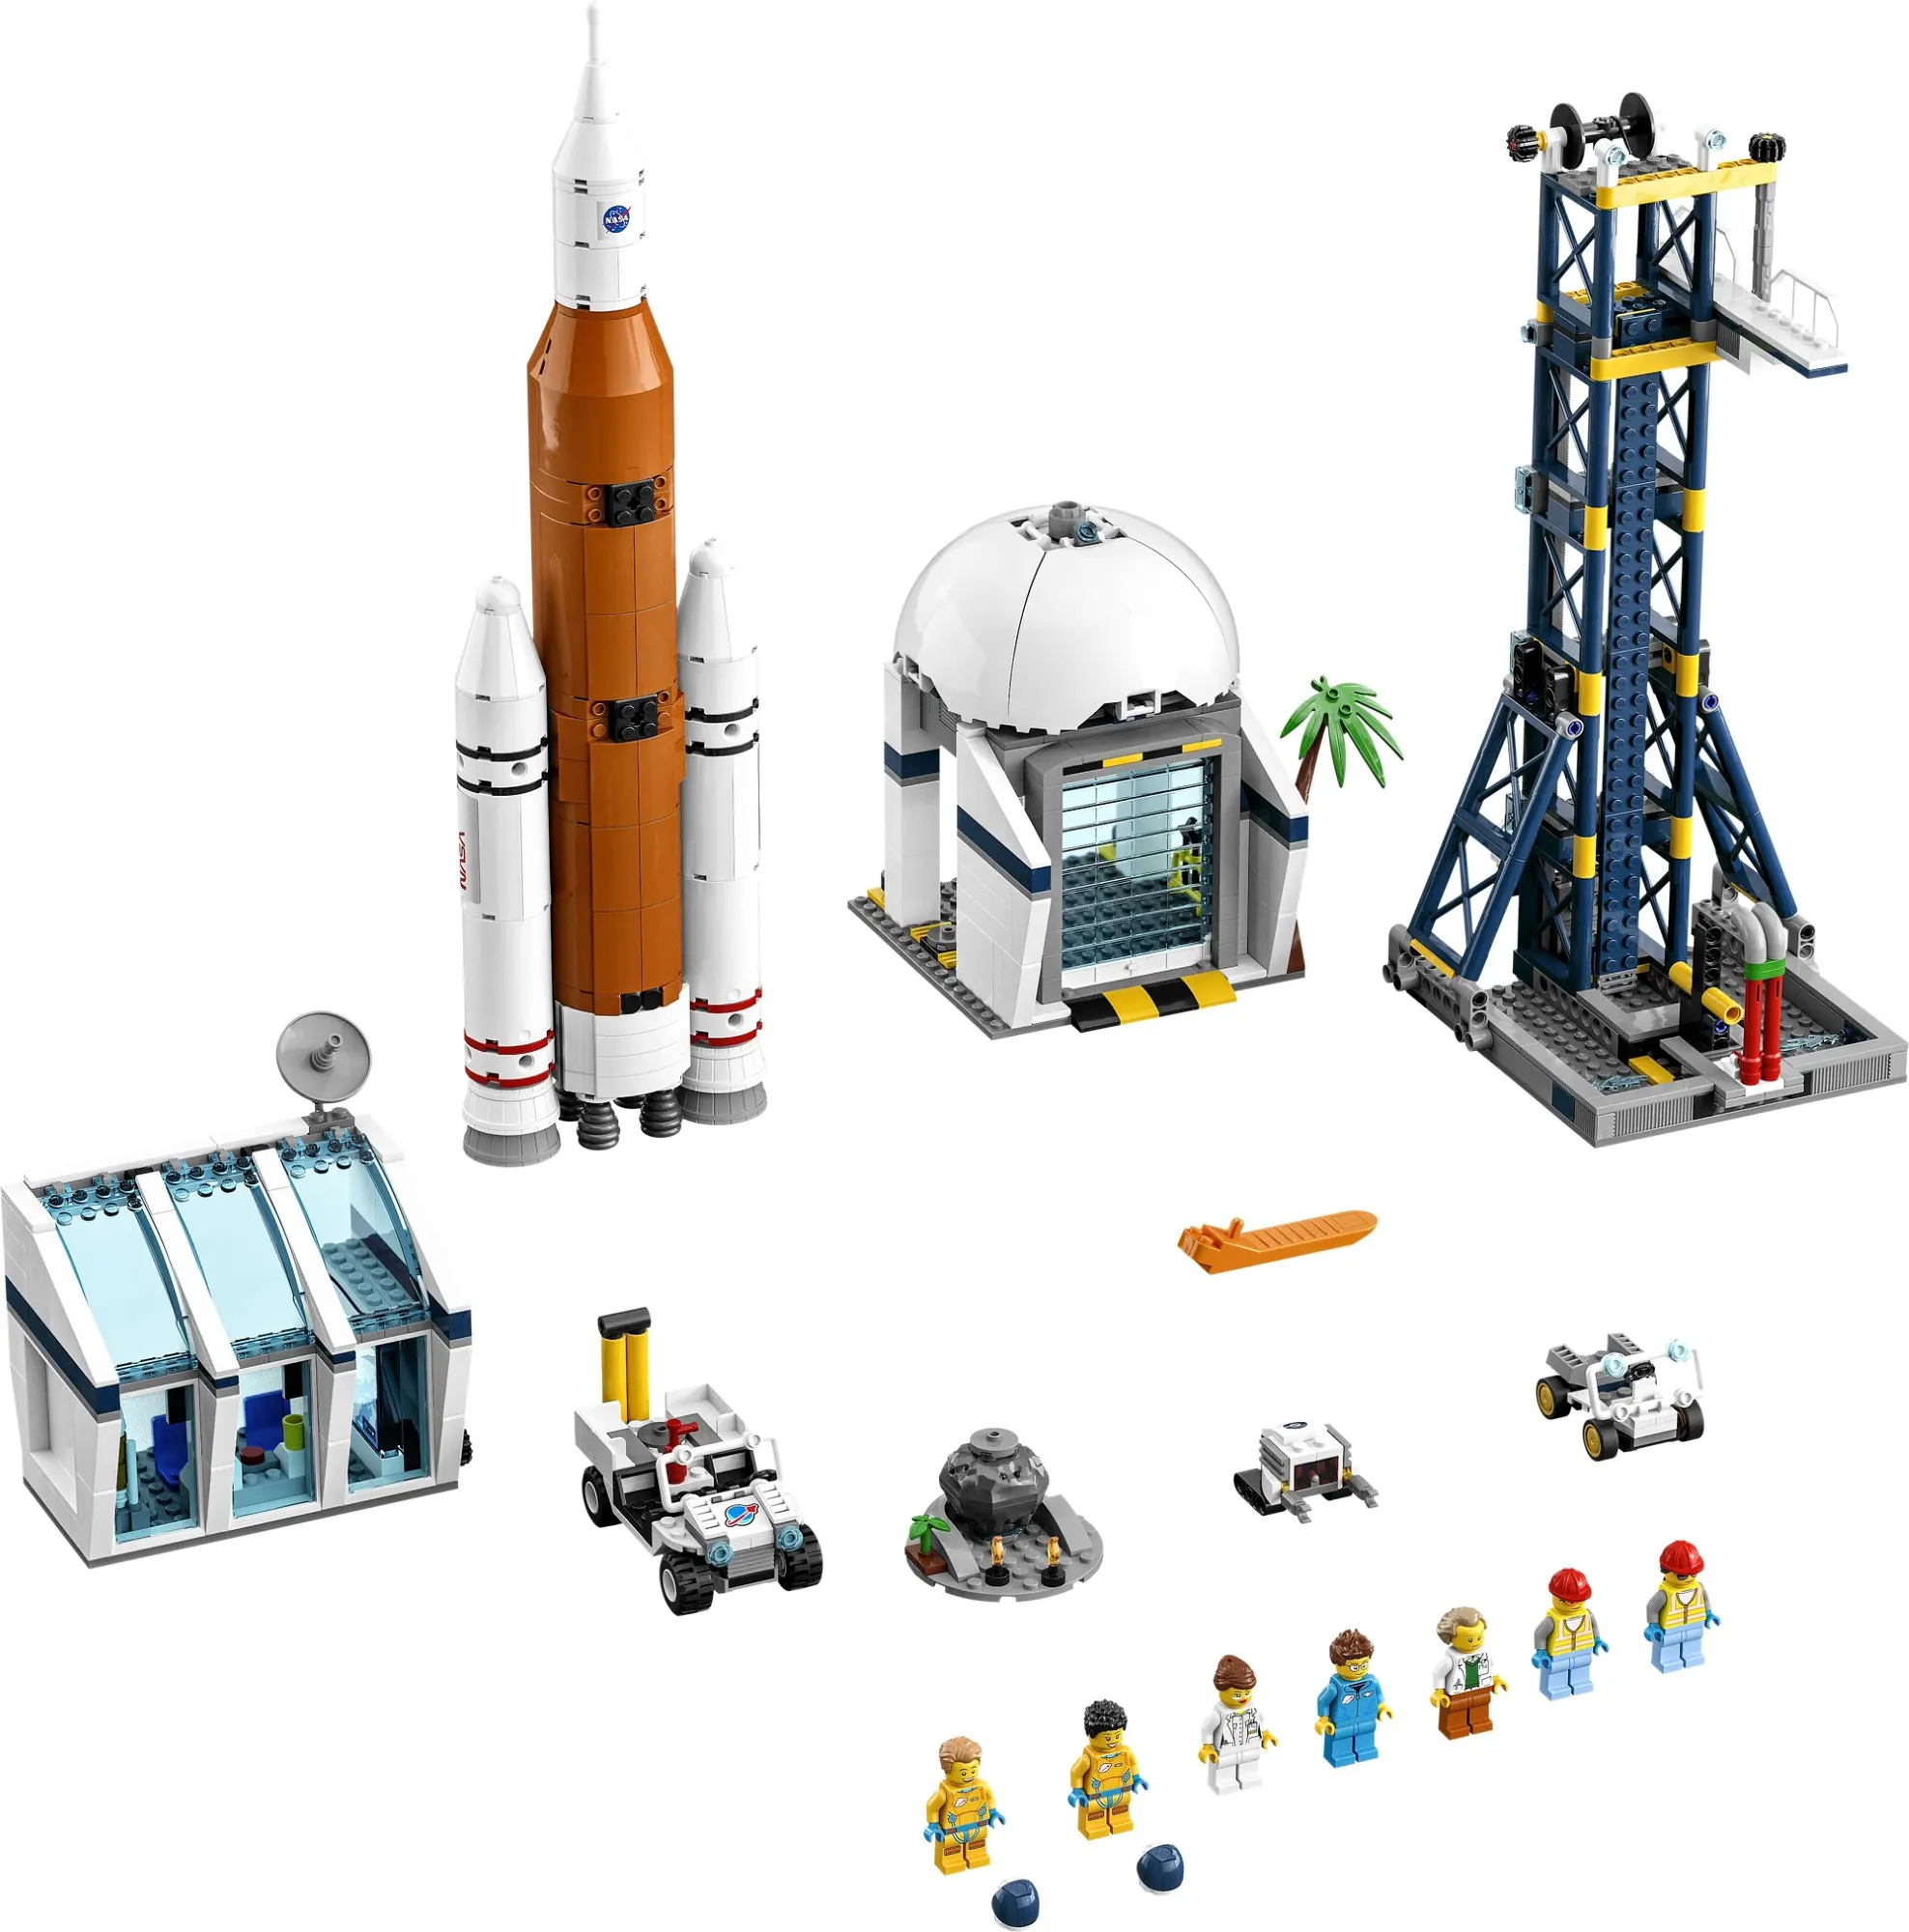 ロケット打ち上げセンター レゴ Lego シティ 宇宙 スタッズ レゴ R Lego R 総合ファンニュースメディア